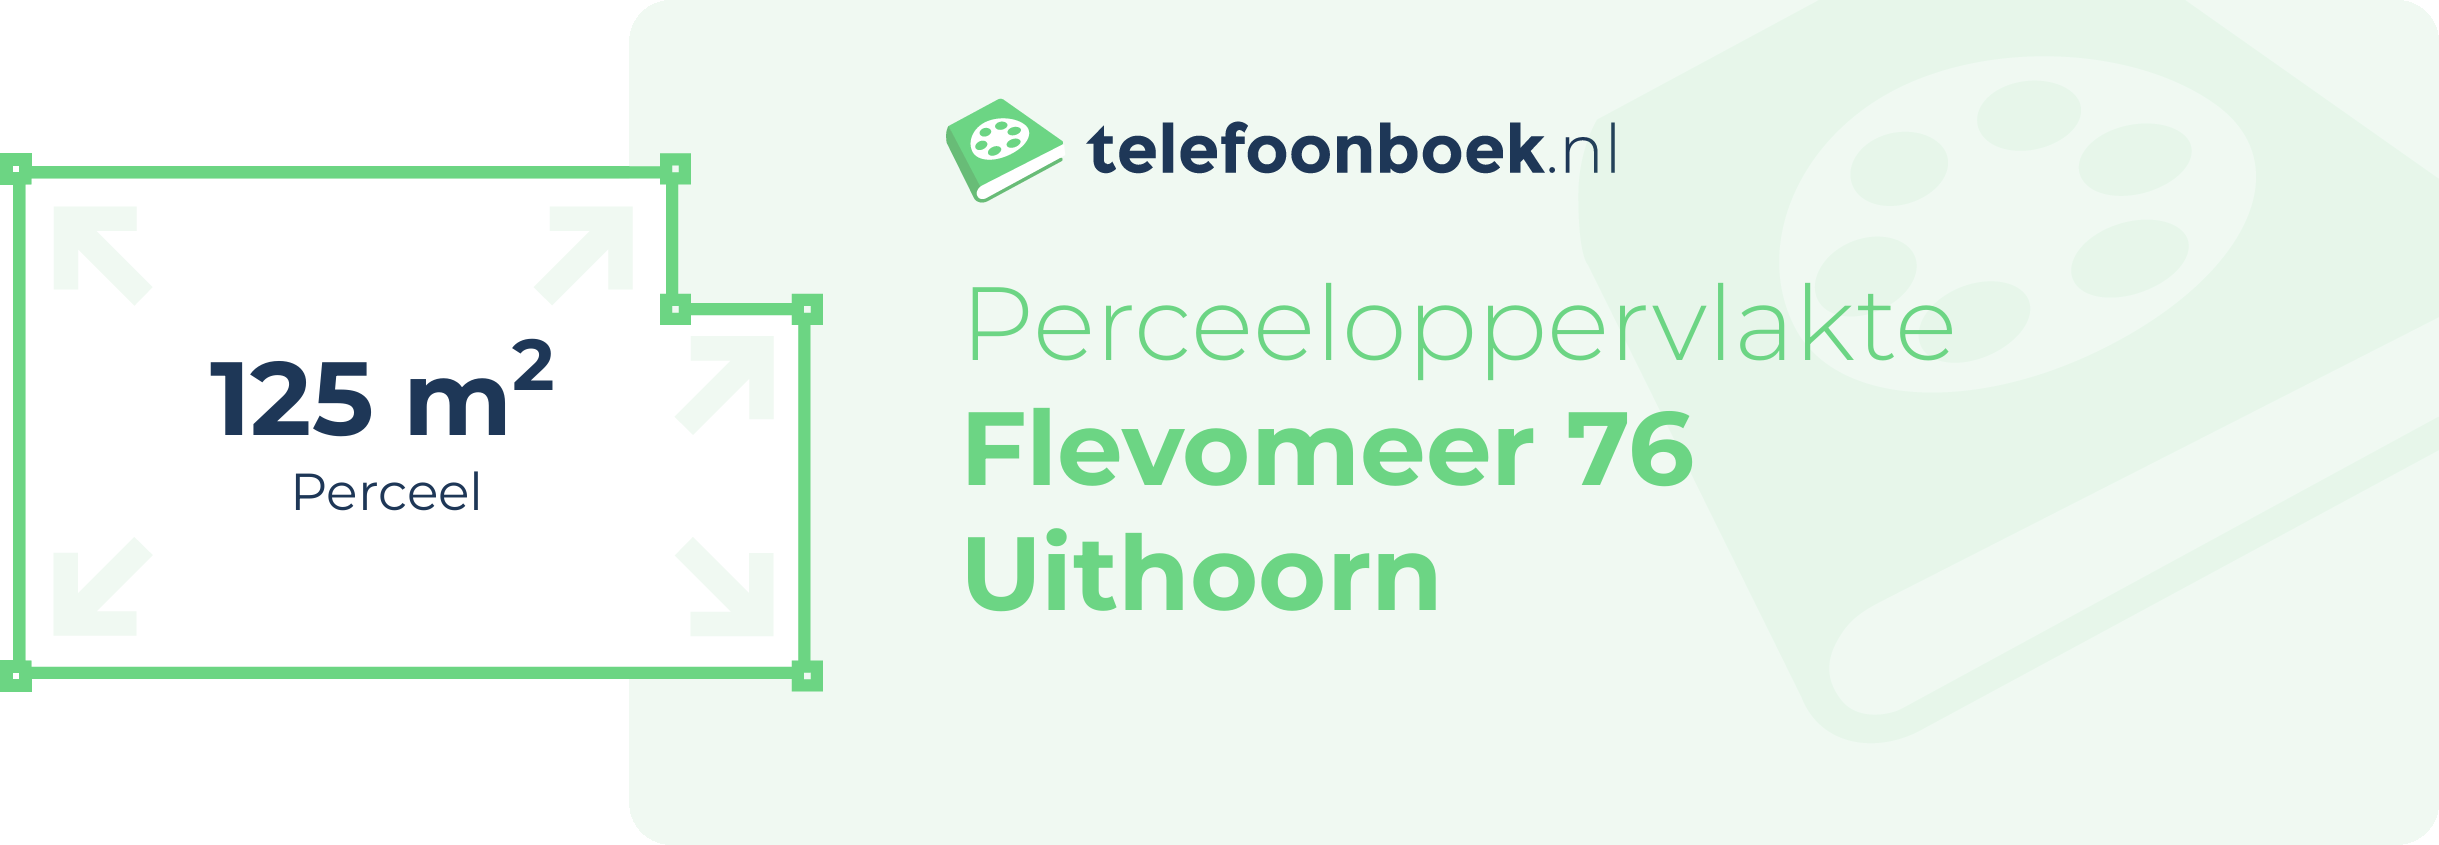 Perceeloppervlakte Flevomeer 76 Uithoorn